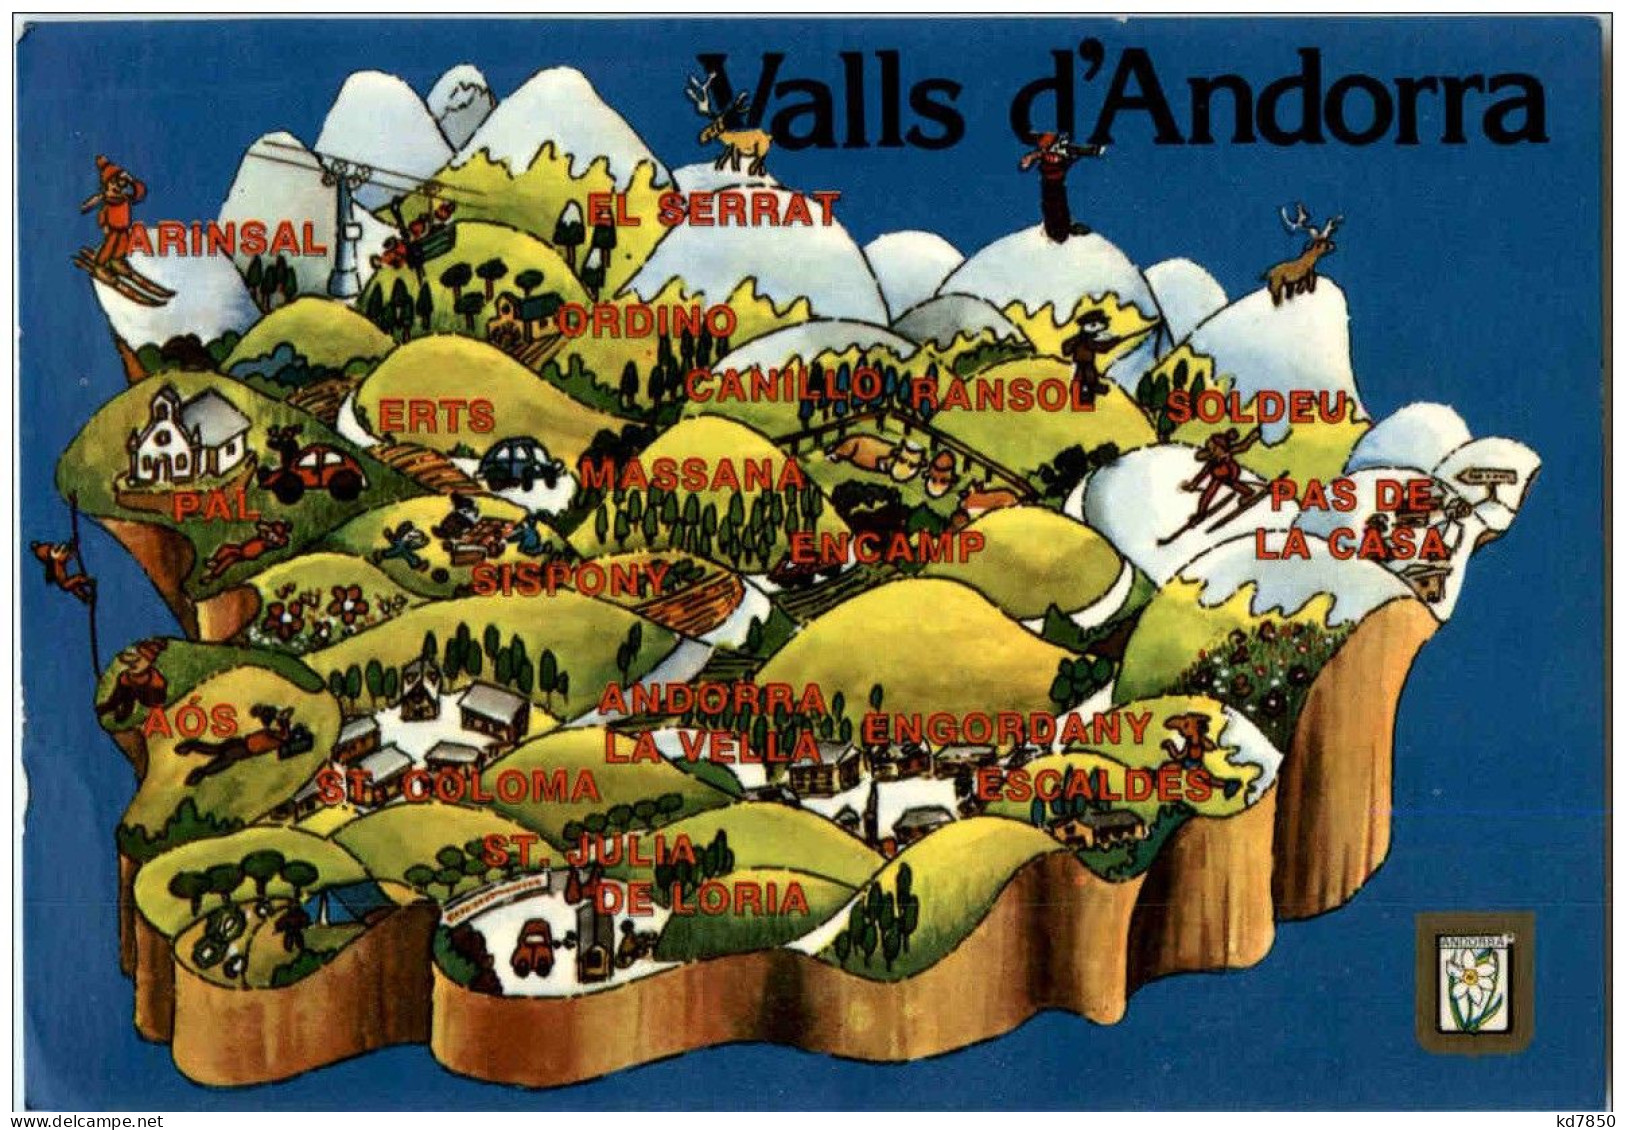 Andorra - Valls D Andorra - Andorre